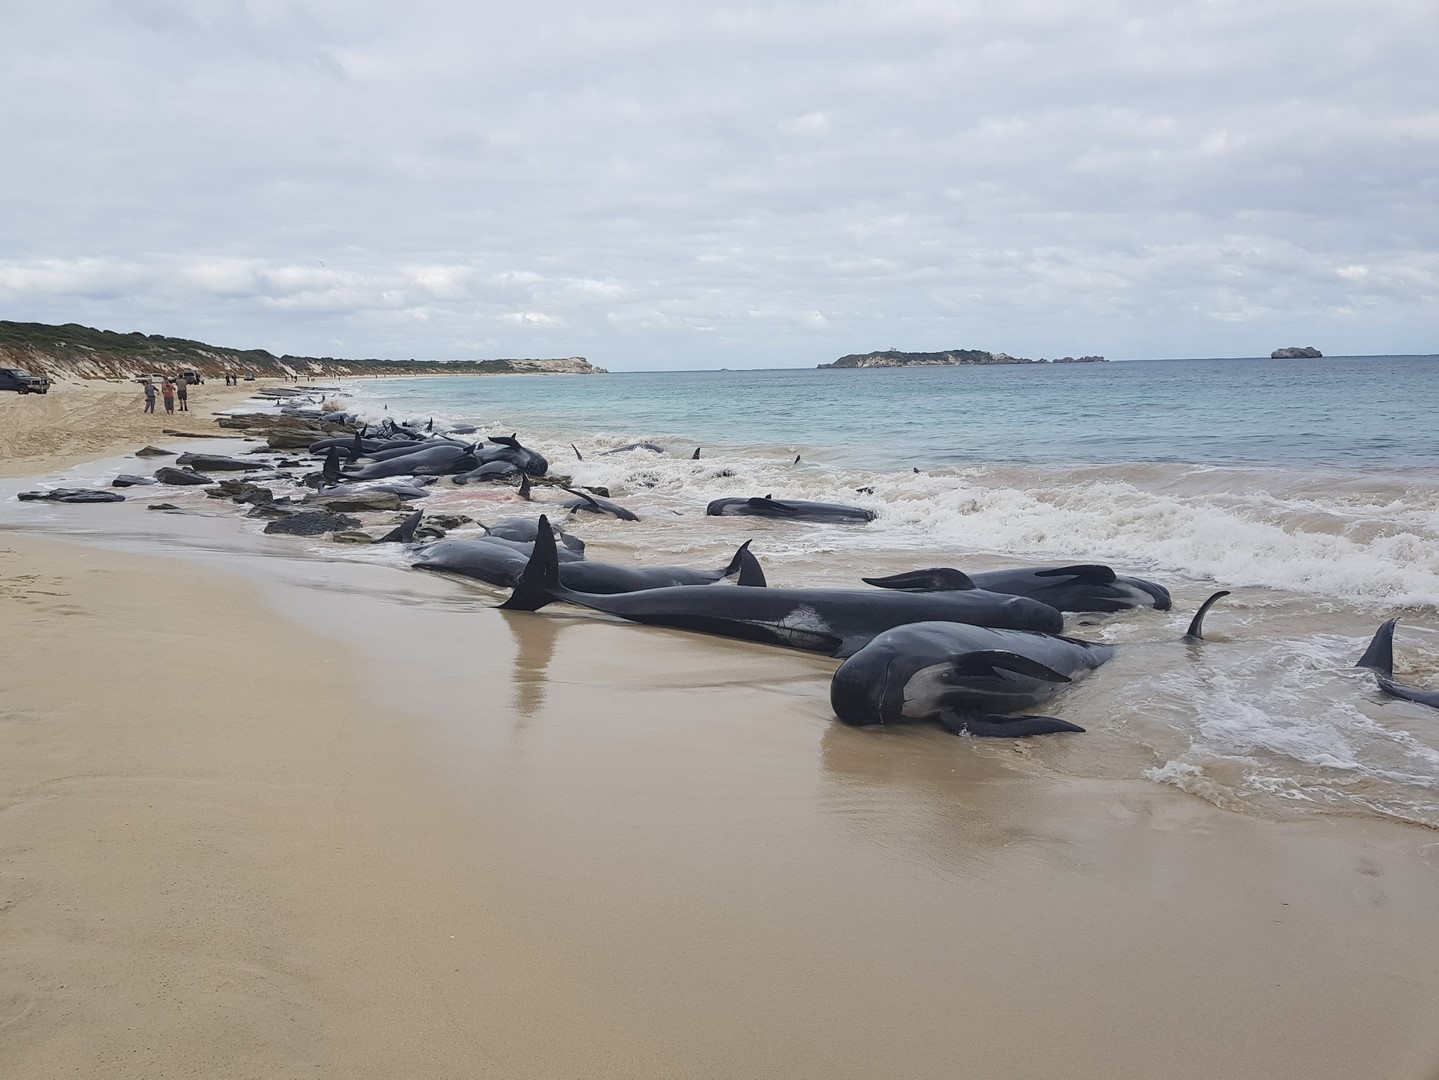 Rescatistas australianos apresuran rescate de ballenas